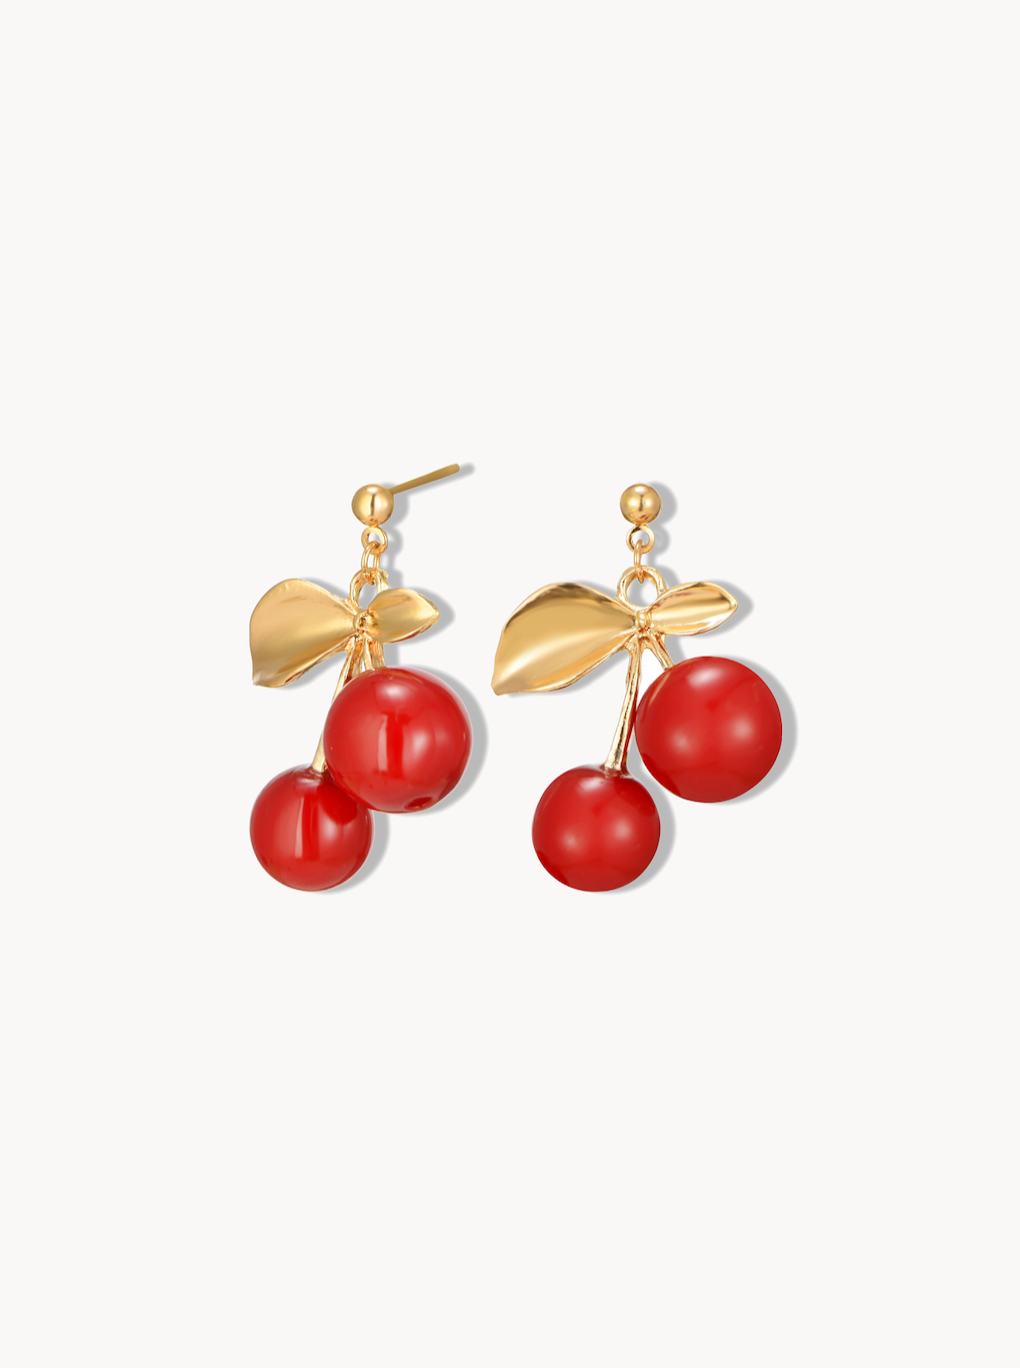 Lisa Golden Cherry Earrings